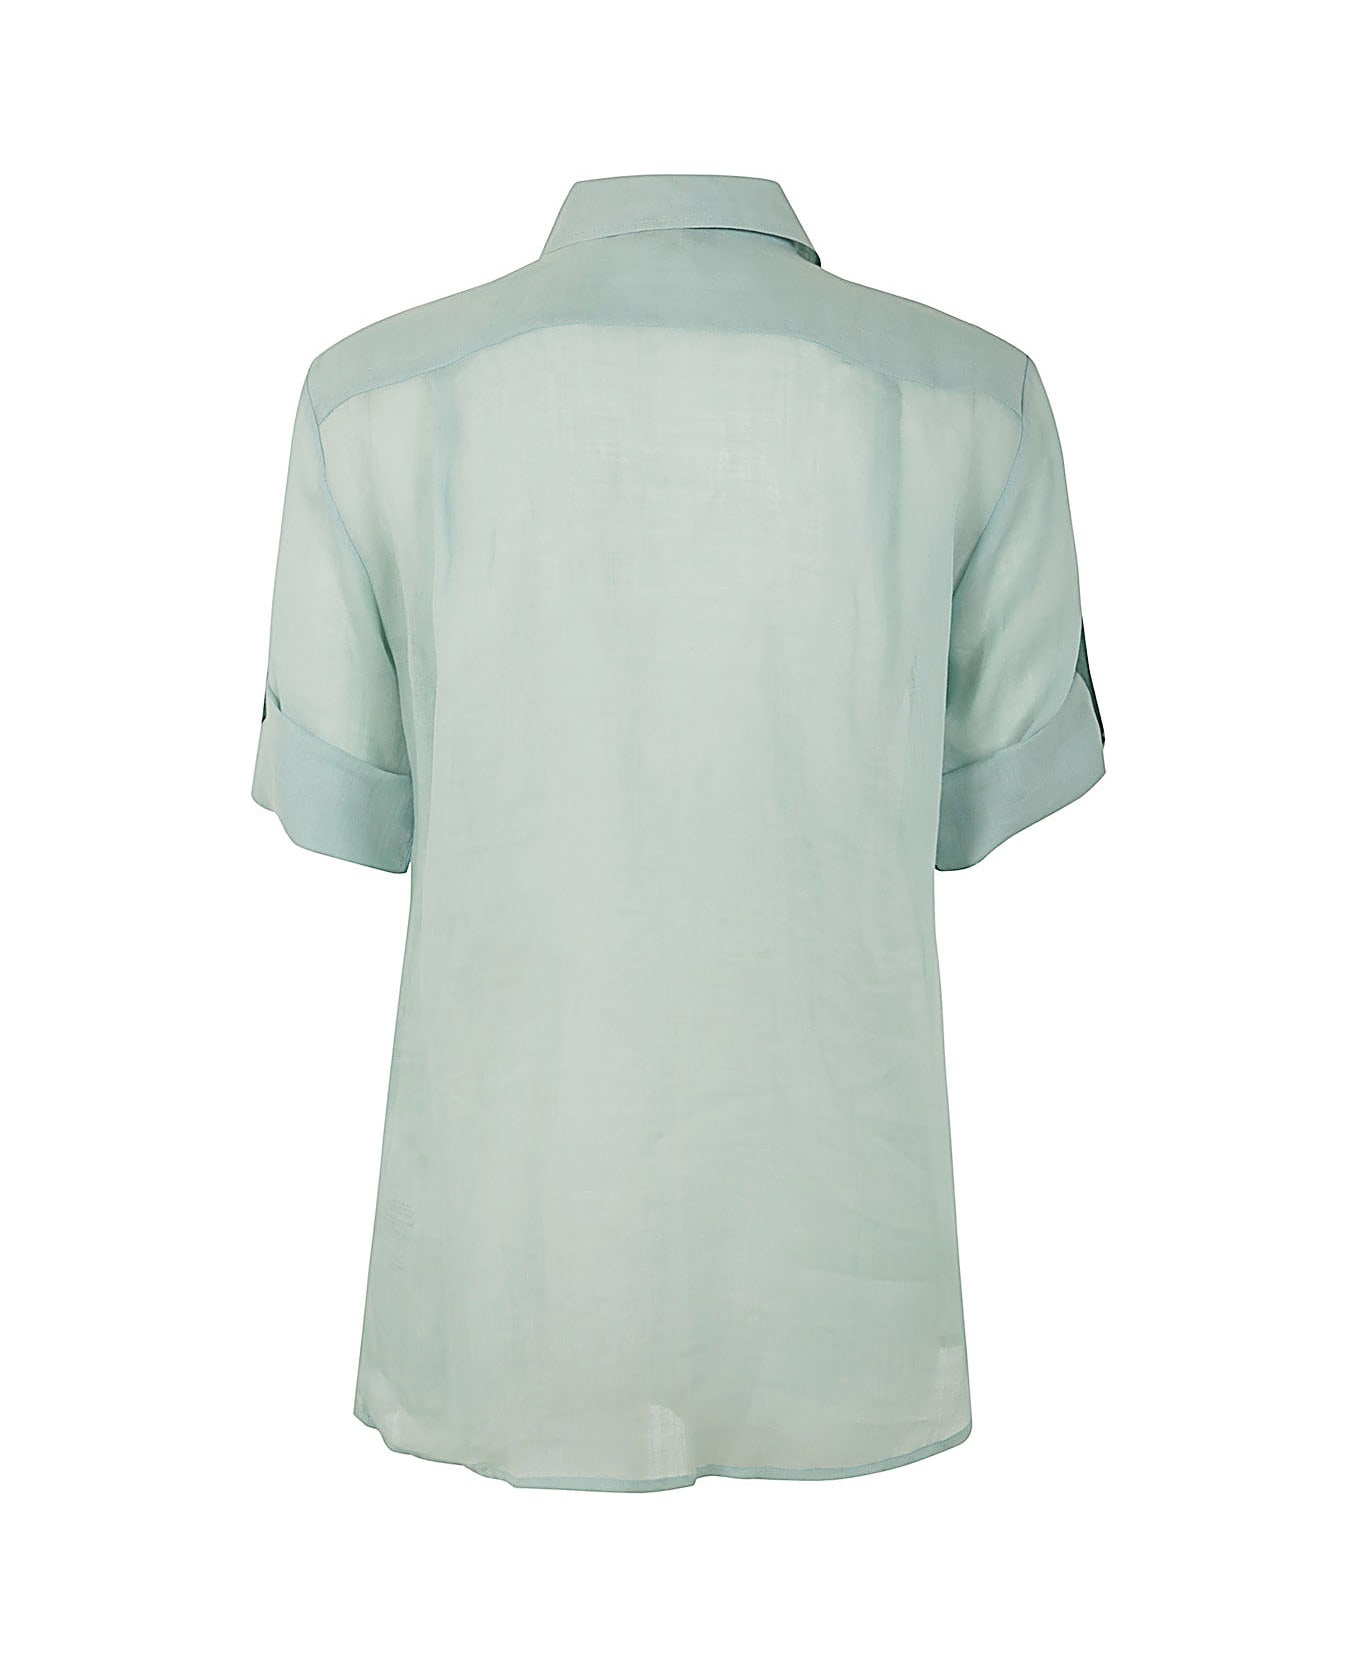 Antonelli Aster 3/4 Sleeves Shirt - Light Blue